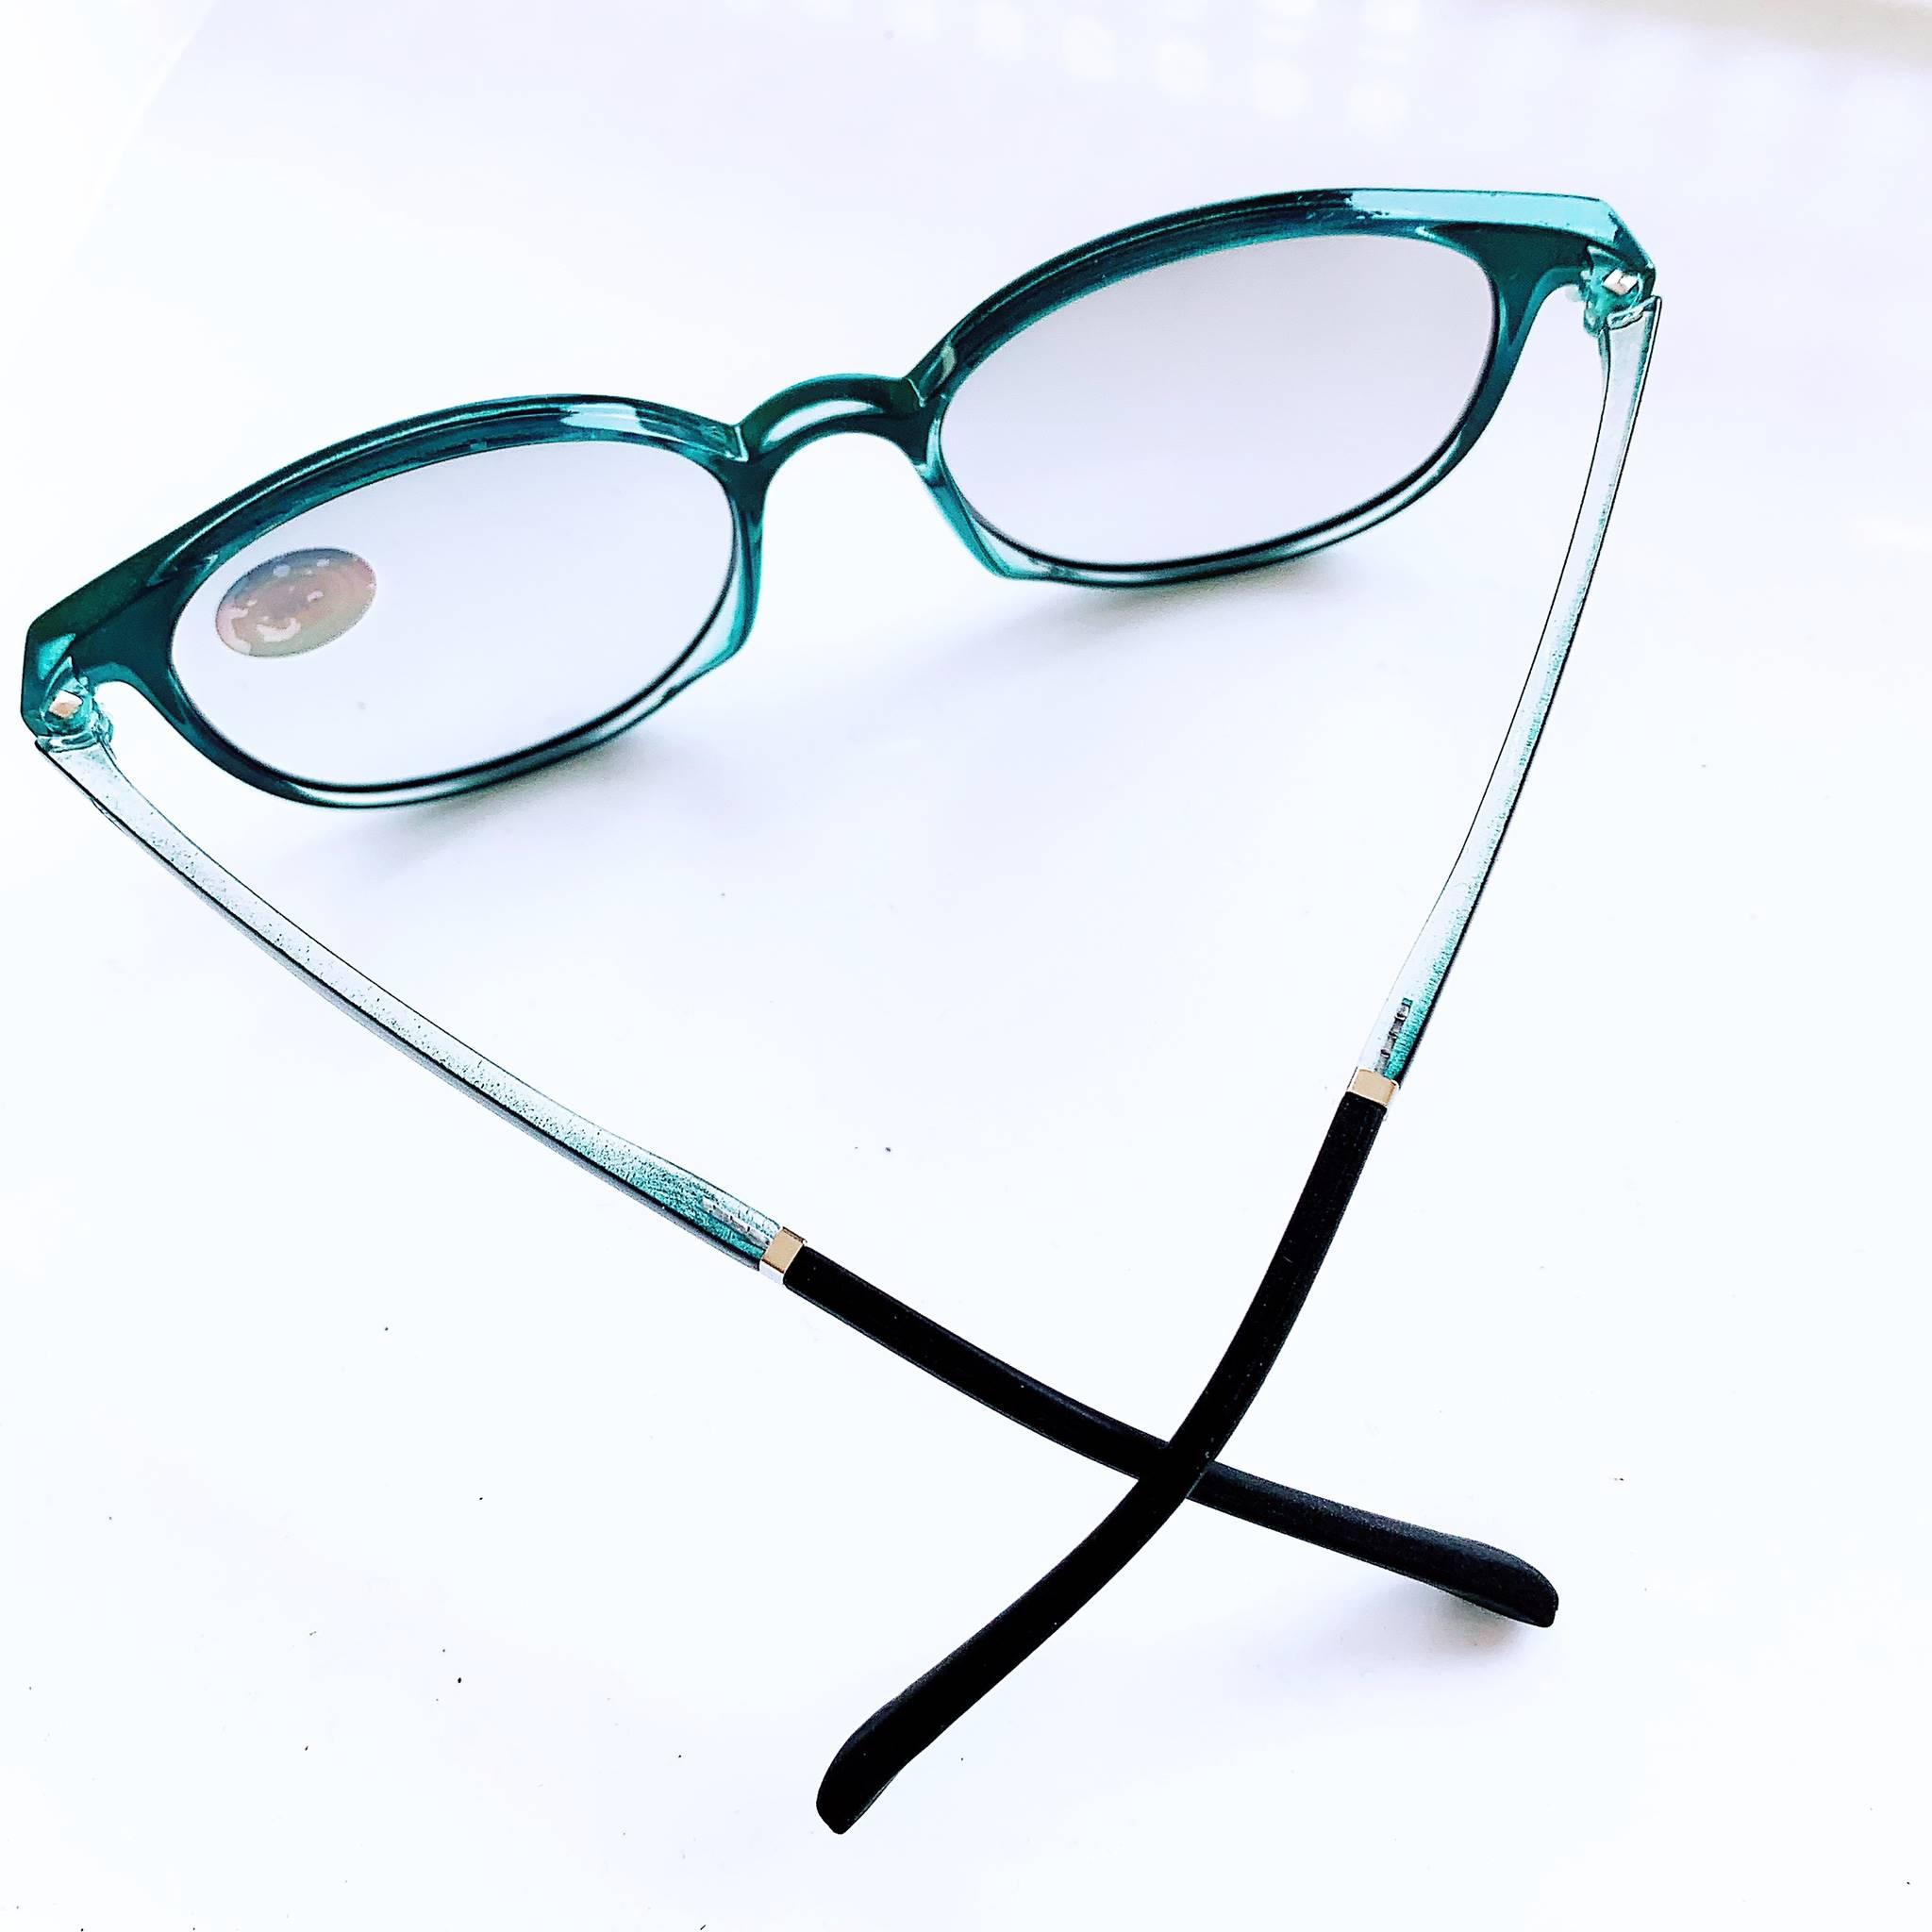 ภาพที่ให้รายละเอียดเกี่ยวกับ แว่นตาออโต้เลนส์ ปรับสีเข้มขึ้นโดยอัตโนมัติ แว่นสายตายาว แว่นสายตาสั้น กรอบสีดำล้วน ทรงรี แว่นตา น้ำหนักเบามาก  แถม ซอง + ผ้าเช็ดเลนส์